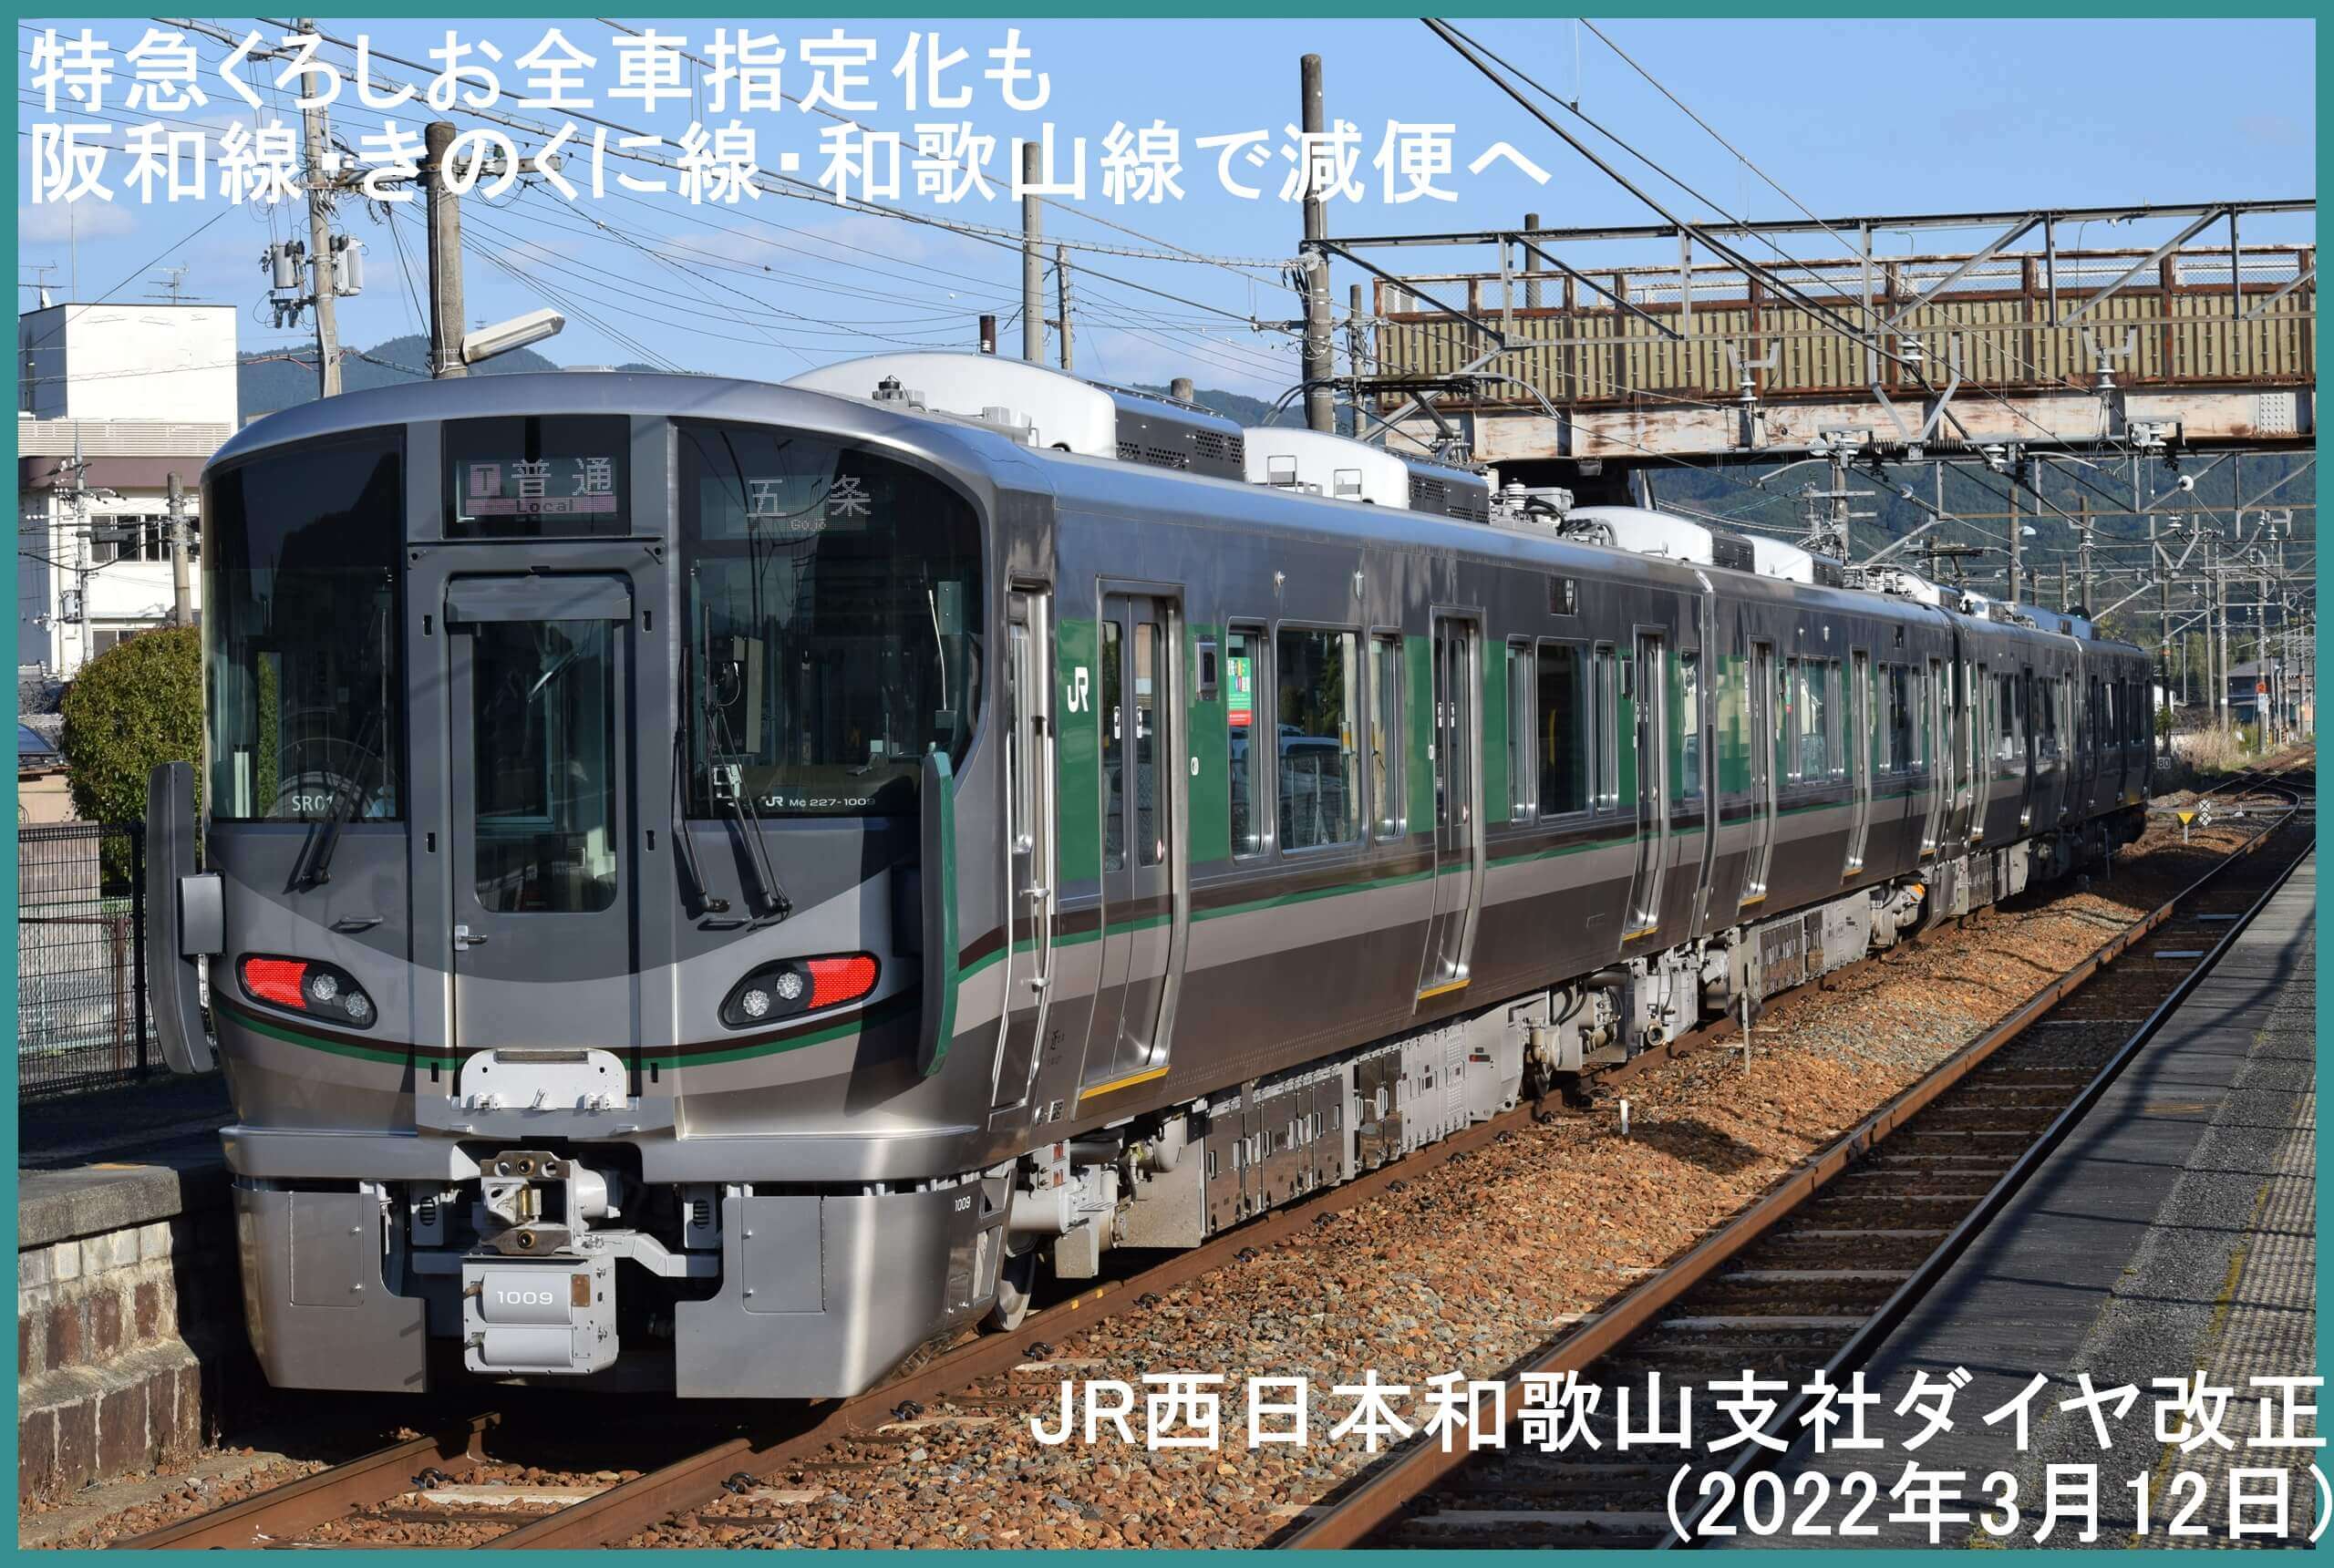 特急くろしお全車指定化も阪和線・きのくに線・和歌山線で減便へ　JR西日本和歌山支社ダイヤ改正(2022年3月12日)